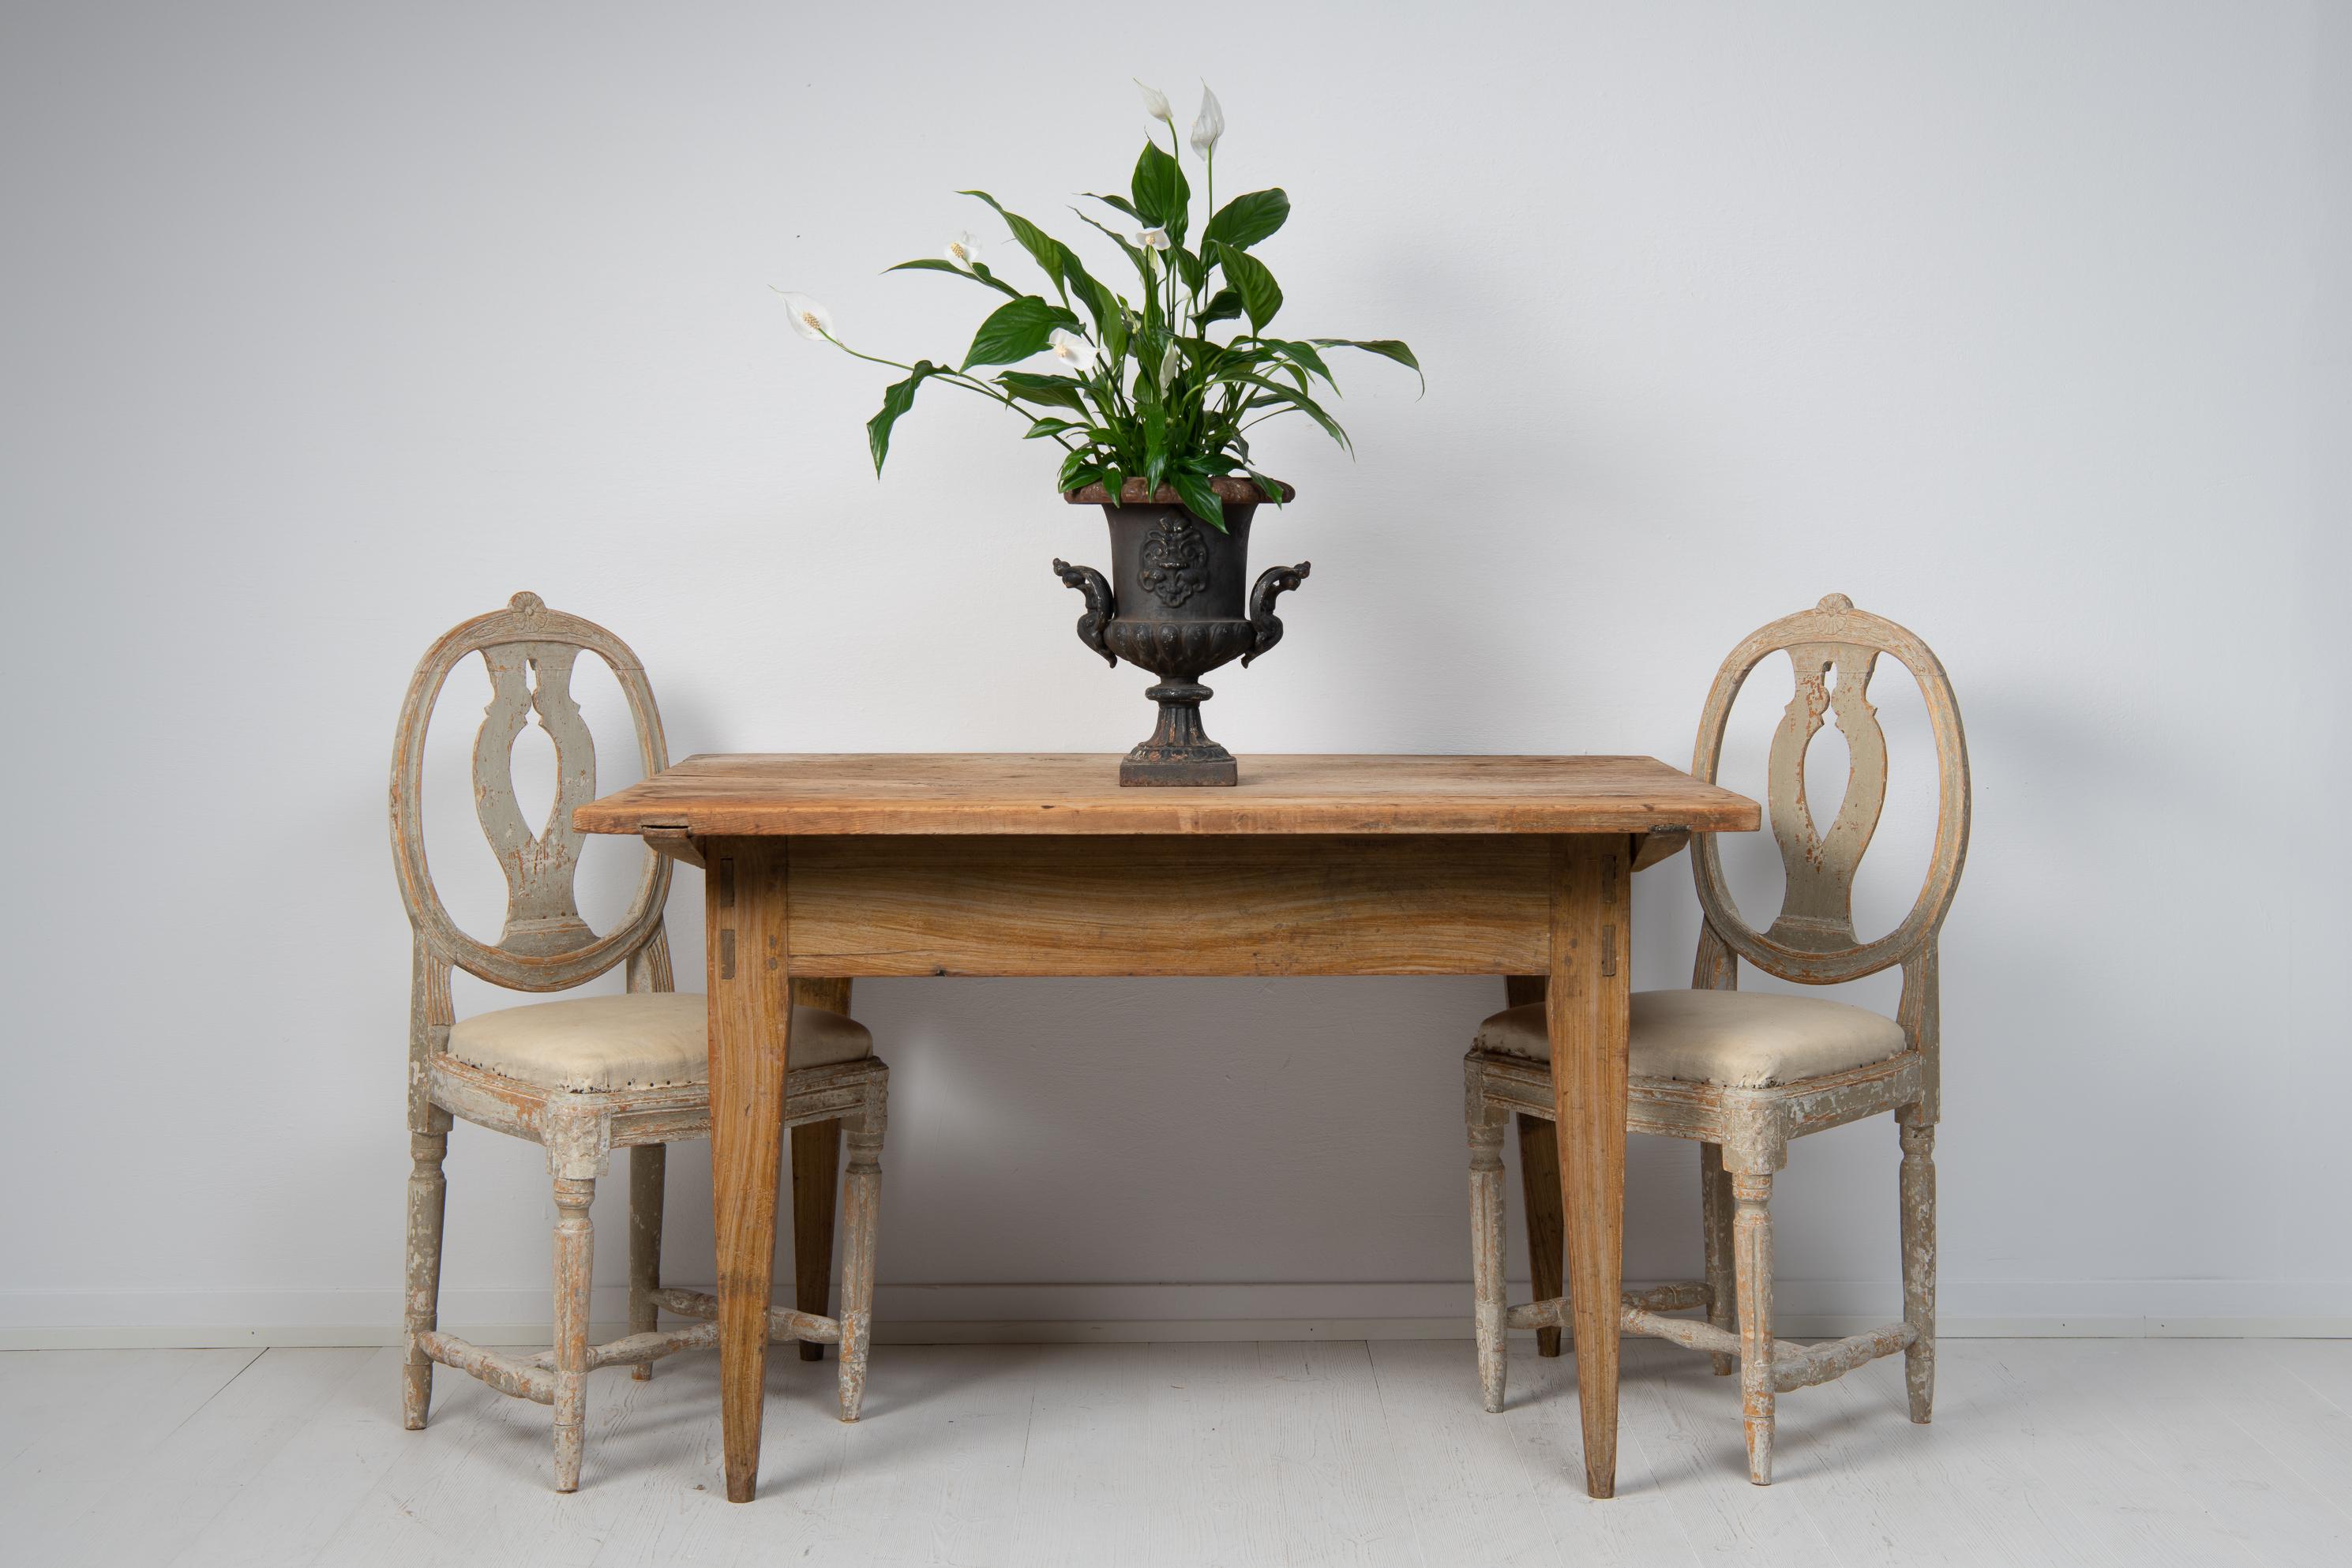 Schwedischer Arbeits- oder Esstisch in Volkskunst aus dem frühen 19. Jahrhundert, um 1820. Der Tisch ist eine schwedische Antiquität, echt und ehrlich mit einem soliden Gestell und schlichtem Design. Die Proportionen sind reizvoll mit einer leicht